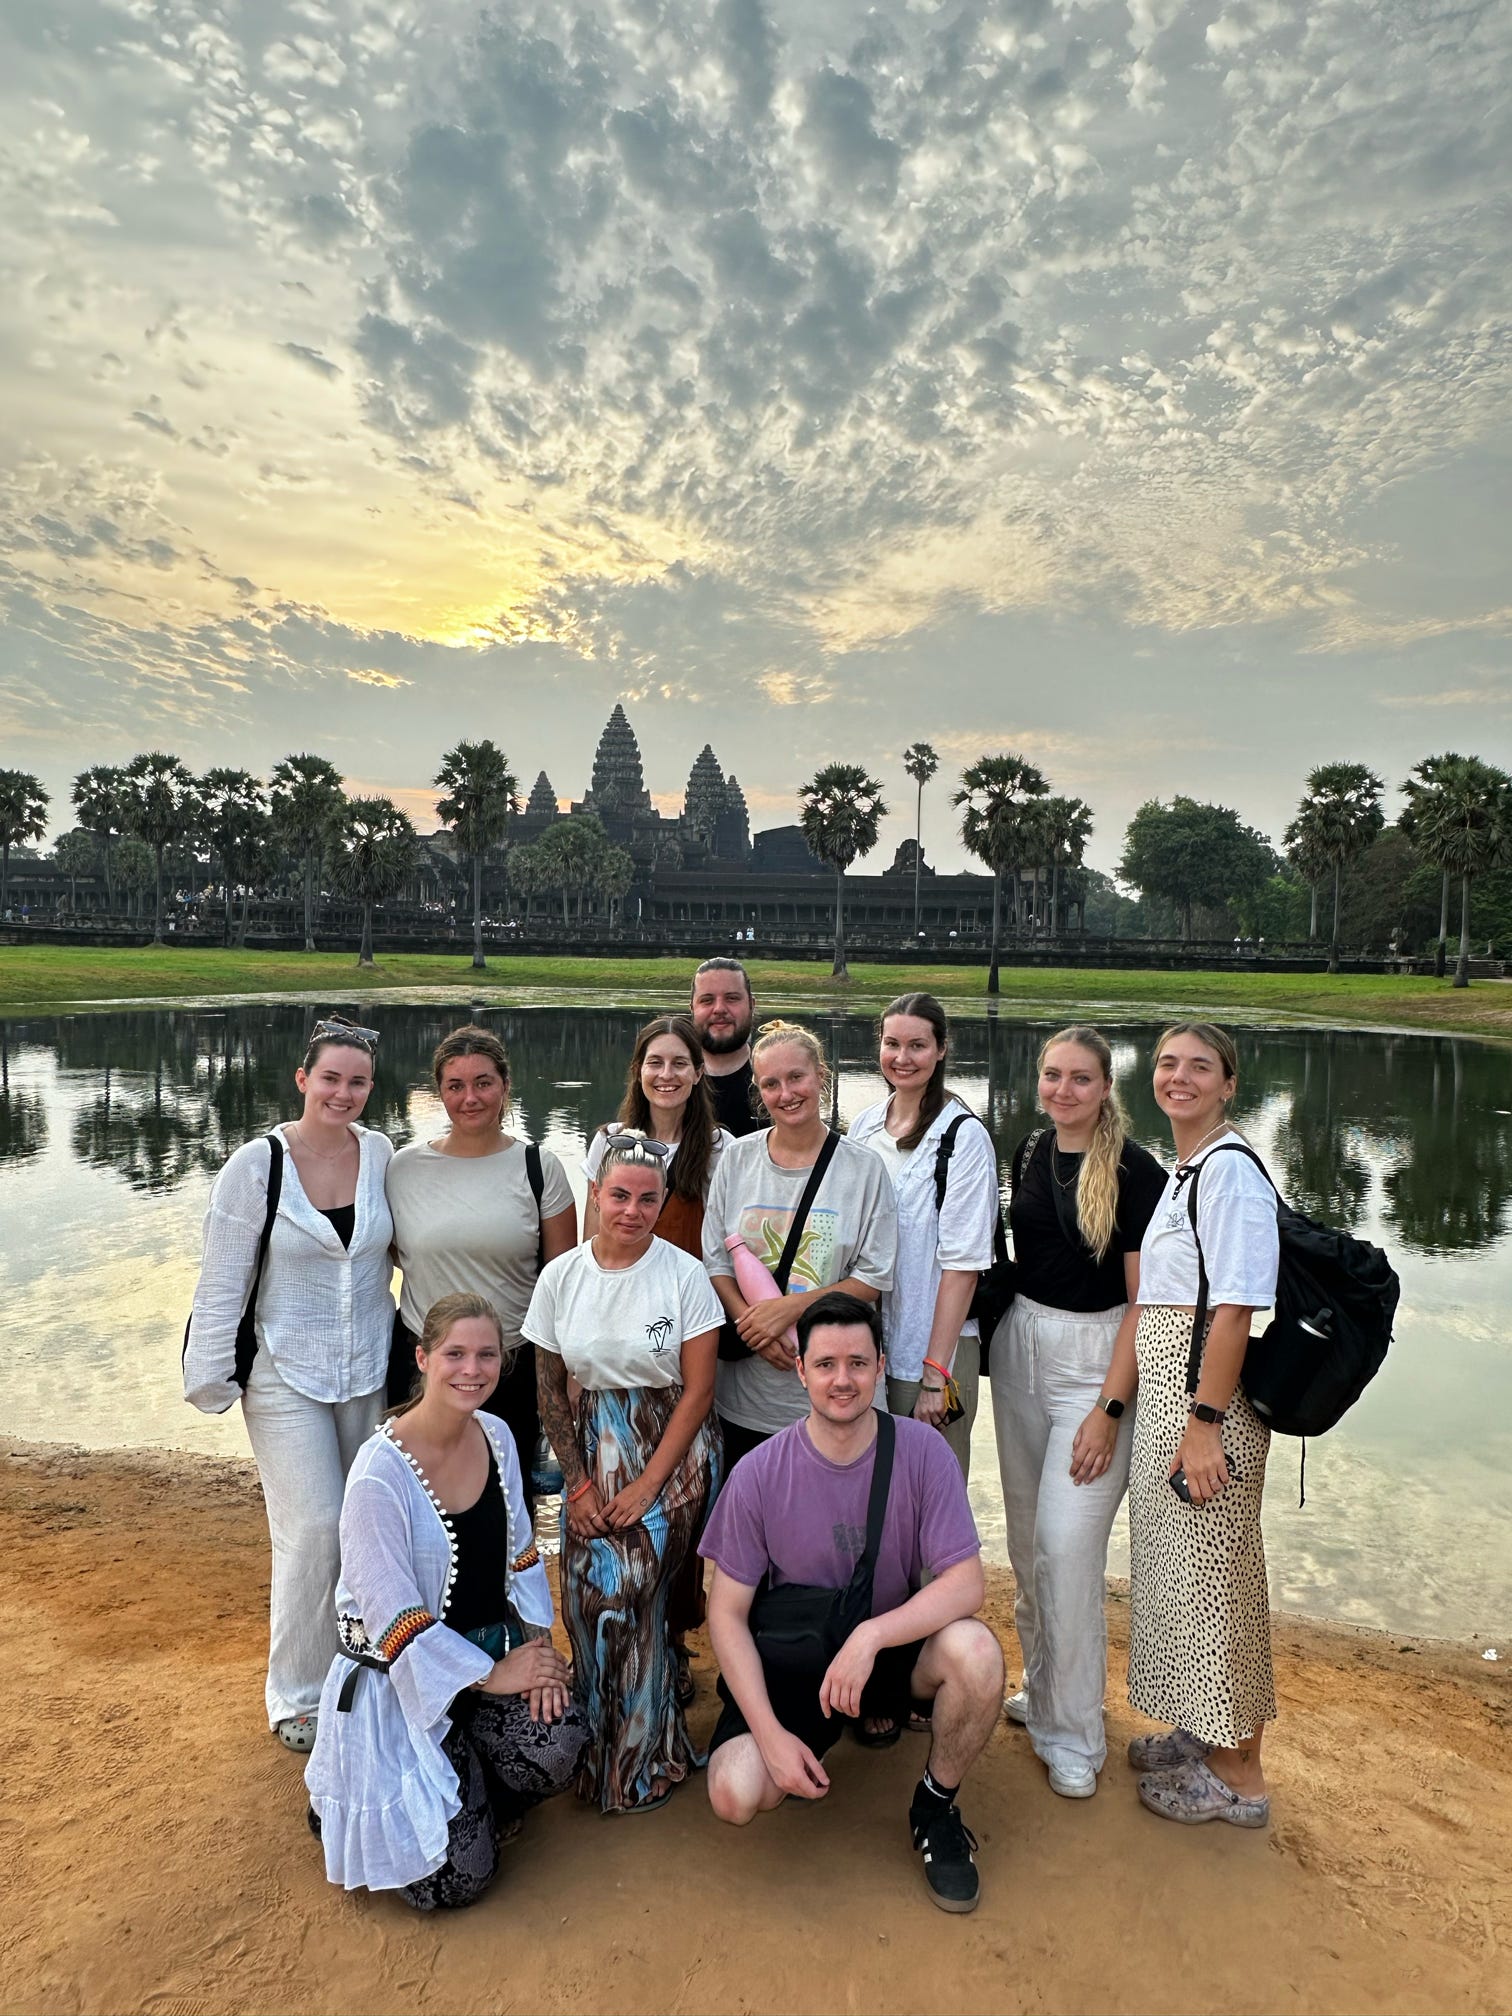 Sunrise at Angkor Wat ☀️